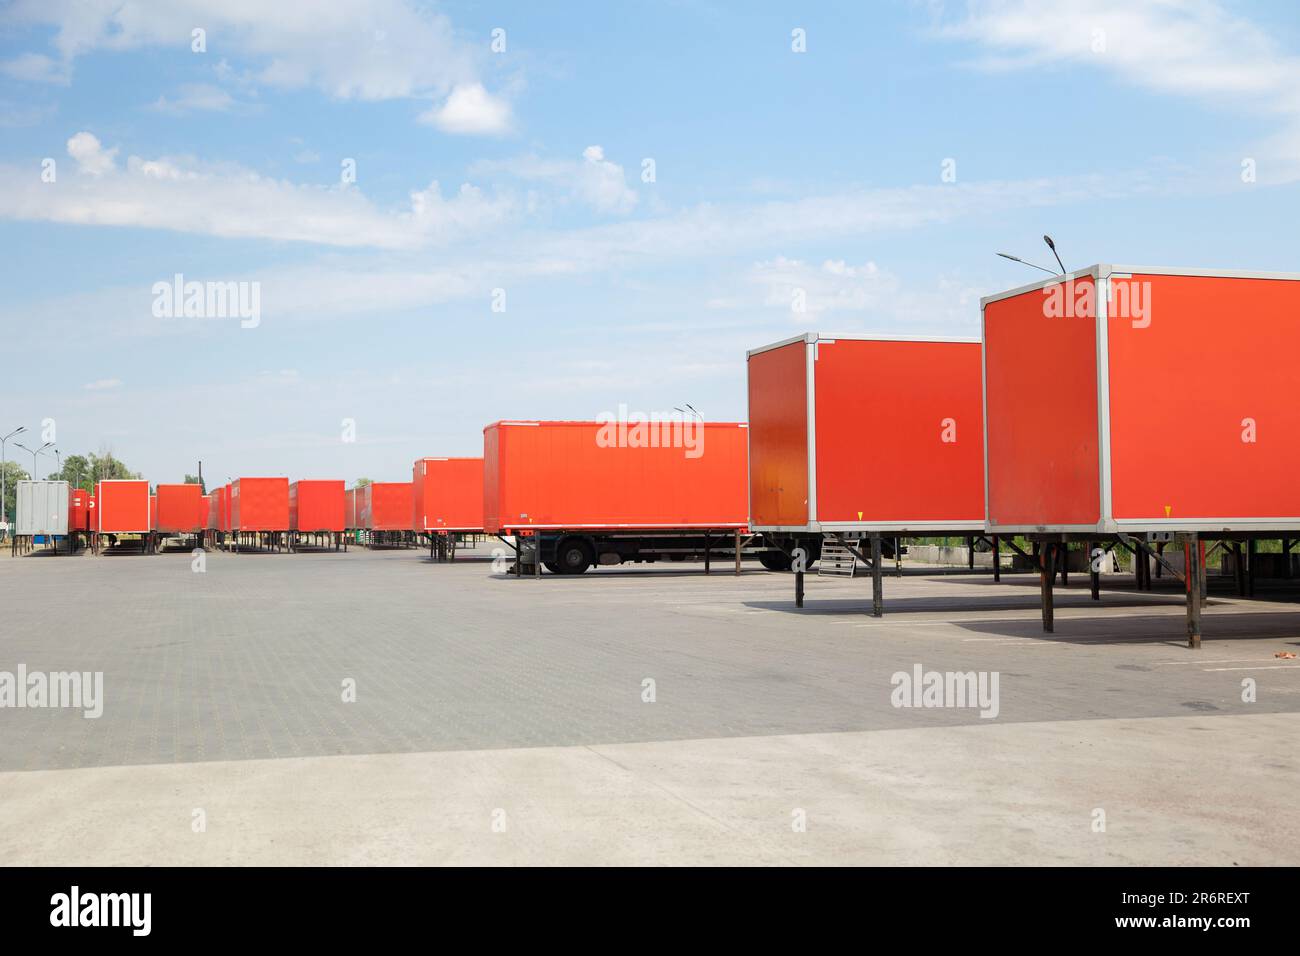 Rangée de remorques rouges pour camions de transport dans une cour Banque D'Images